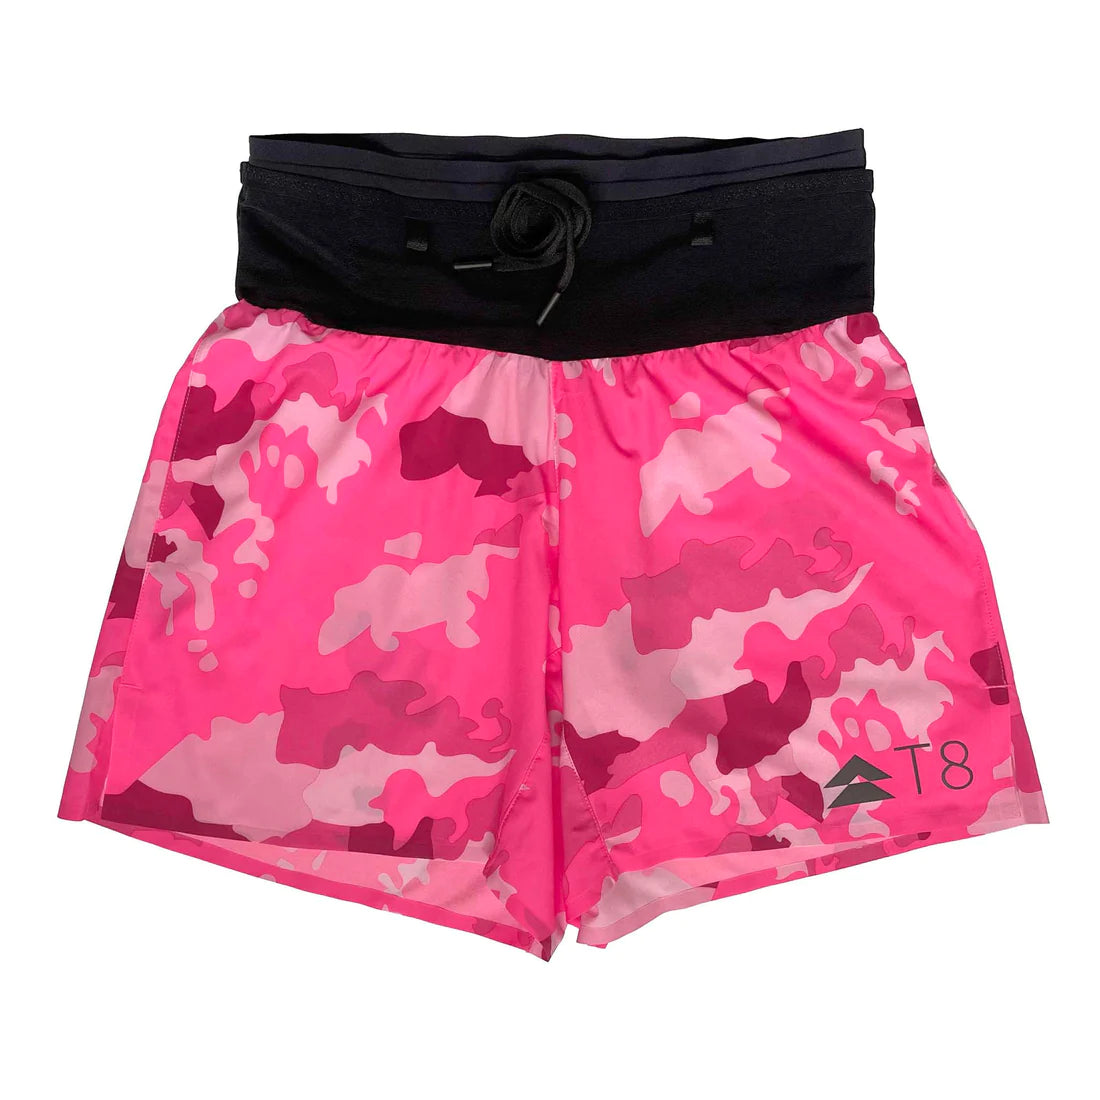 T8 Sherpa Shorts - Men's - Pink Camo